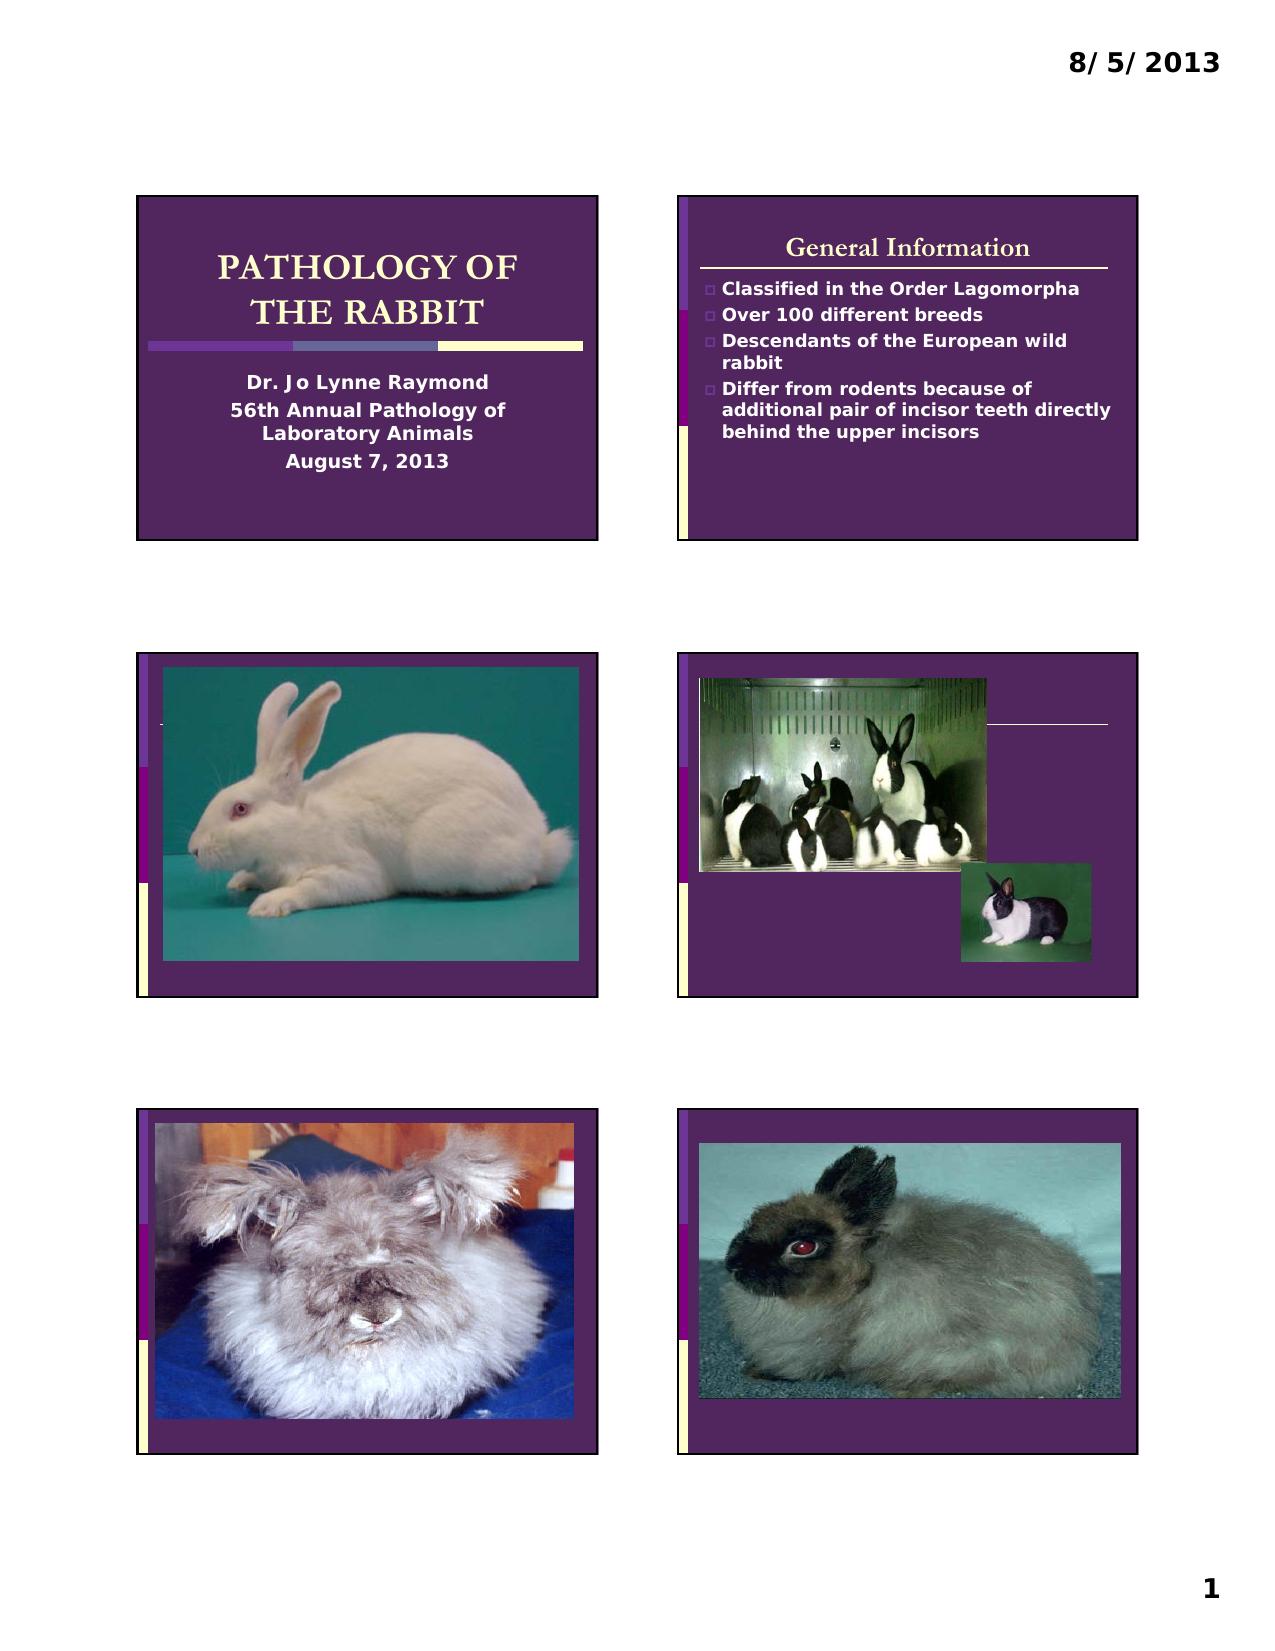 'pathology of the Rabbit 2013